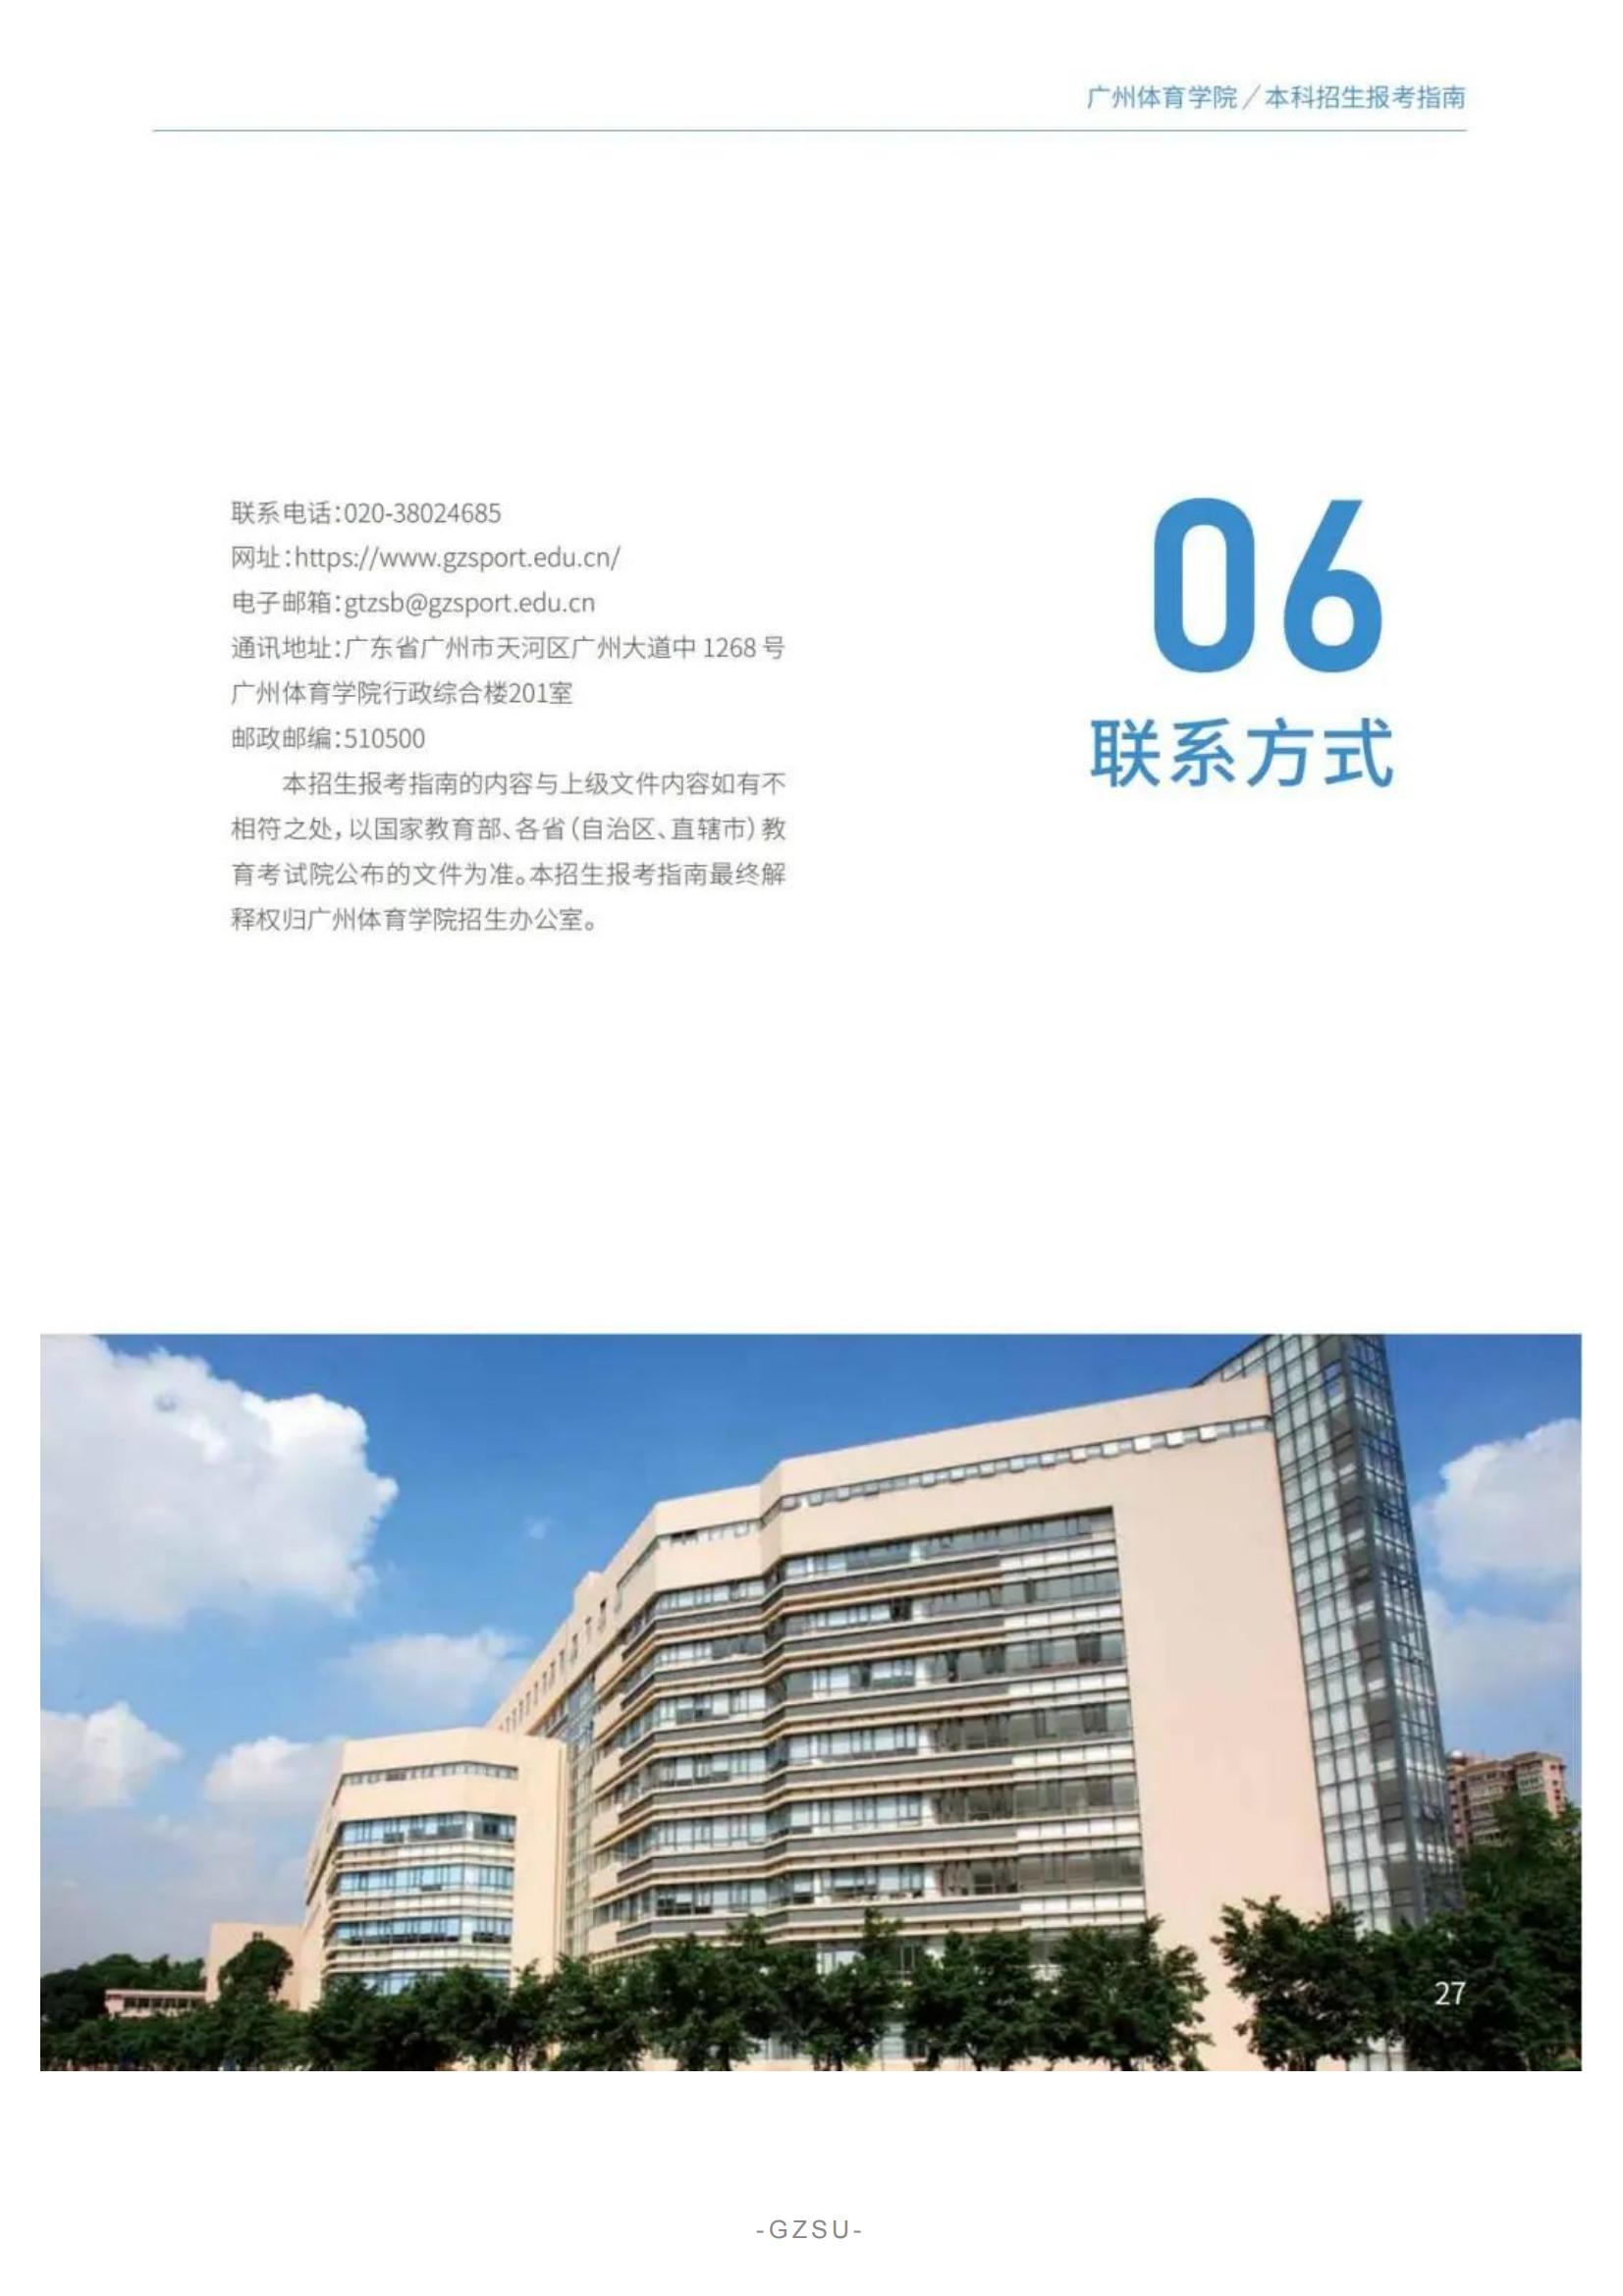 广州体育学院2022年报考指南发布_29.jpg